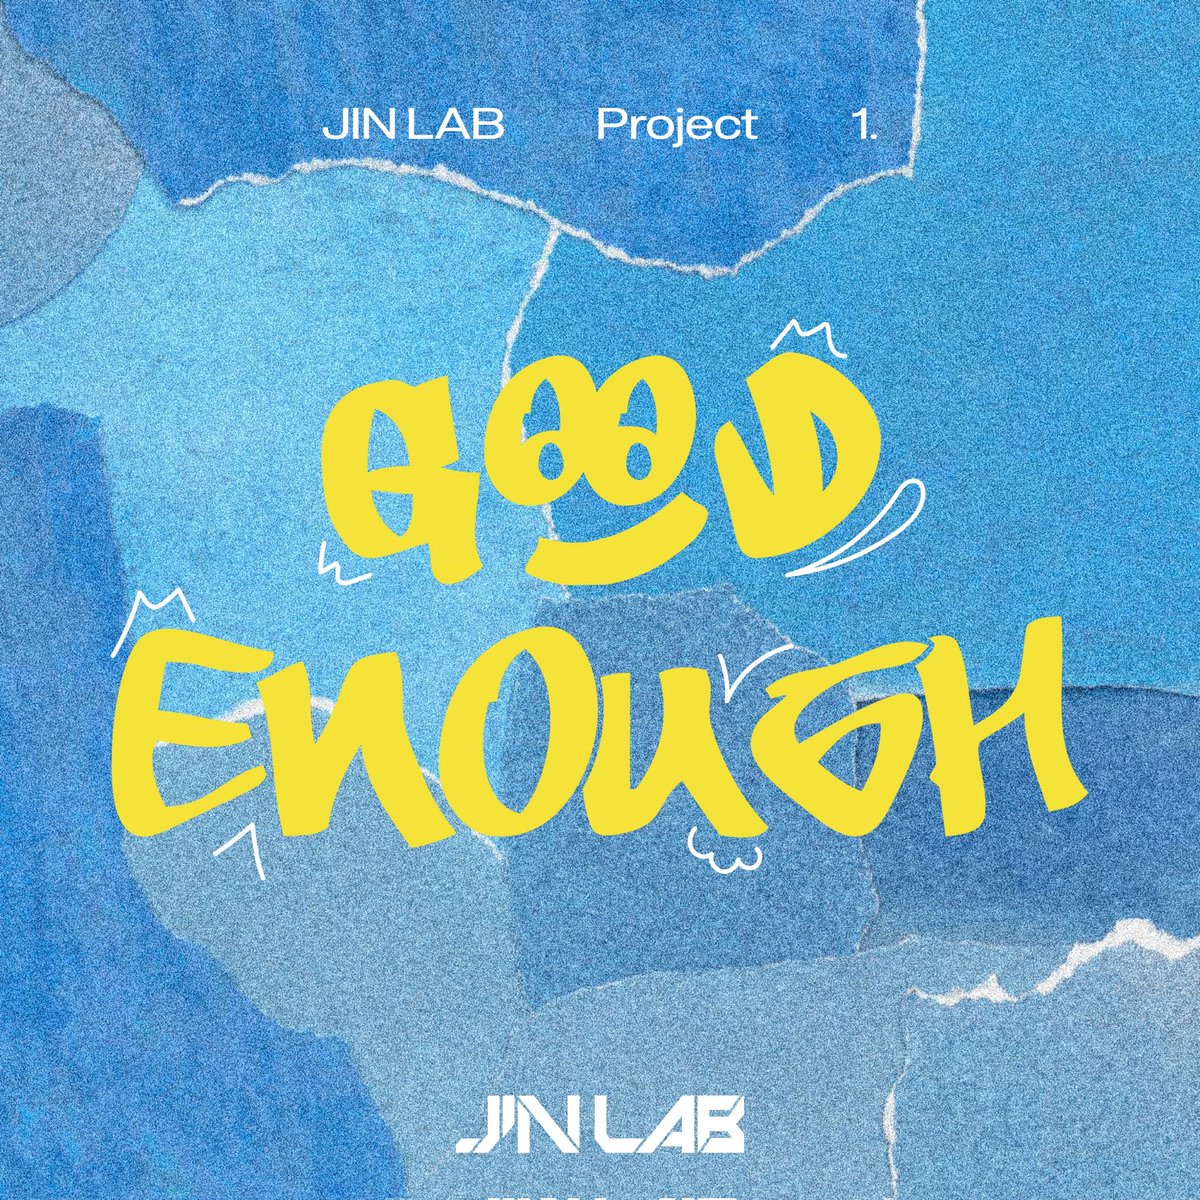 [#아스트로] 진진, 오늘 새 프로젝트 신곡 '굿 이너프' 공개…진솔한 자작곡 ▶ naver.me/xGmE40bF #NEWS #진진 #JINJIN #JINLAB #GoodEnough #ASTRO